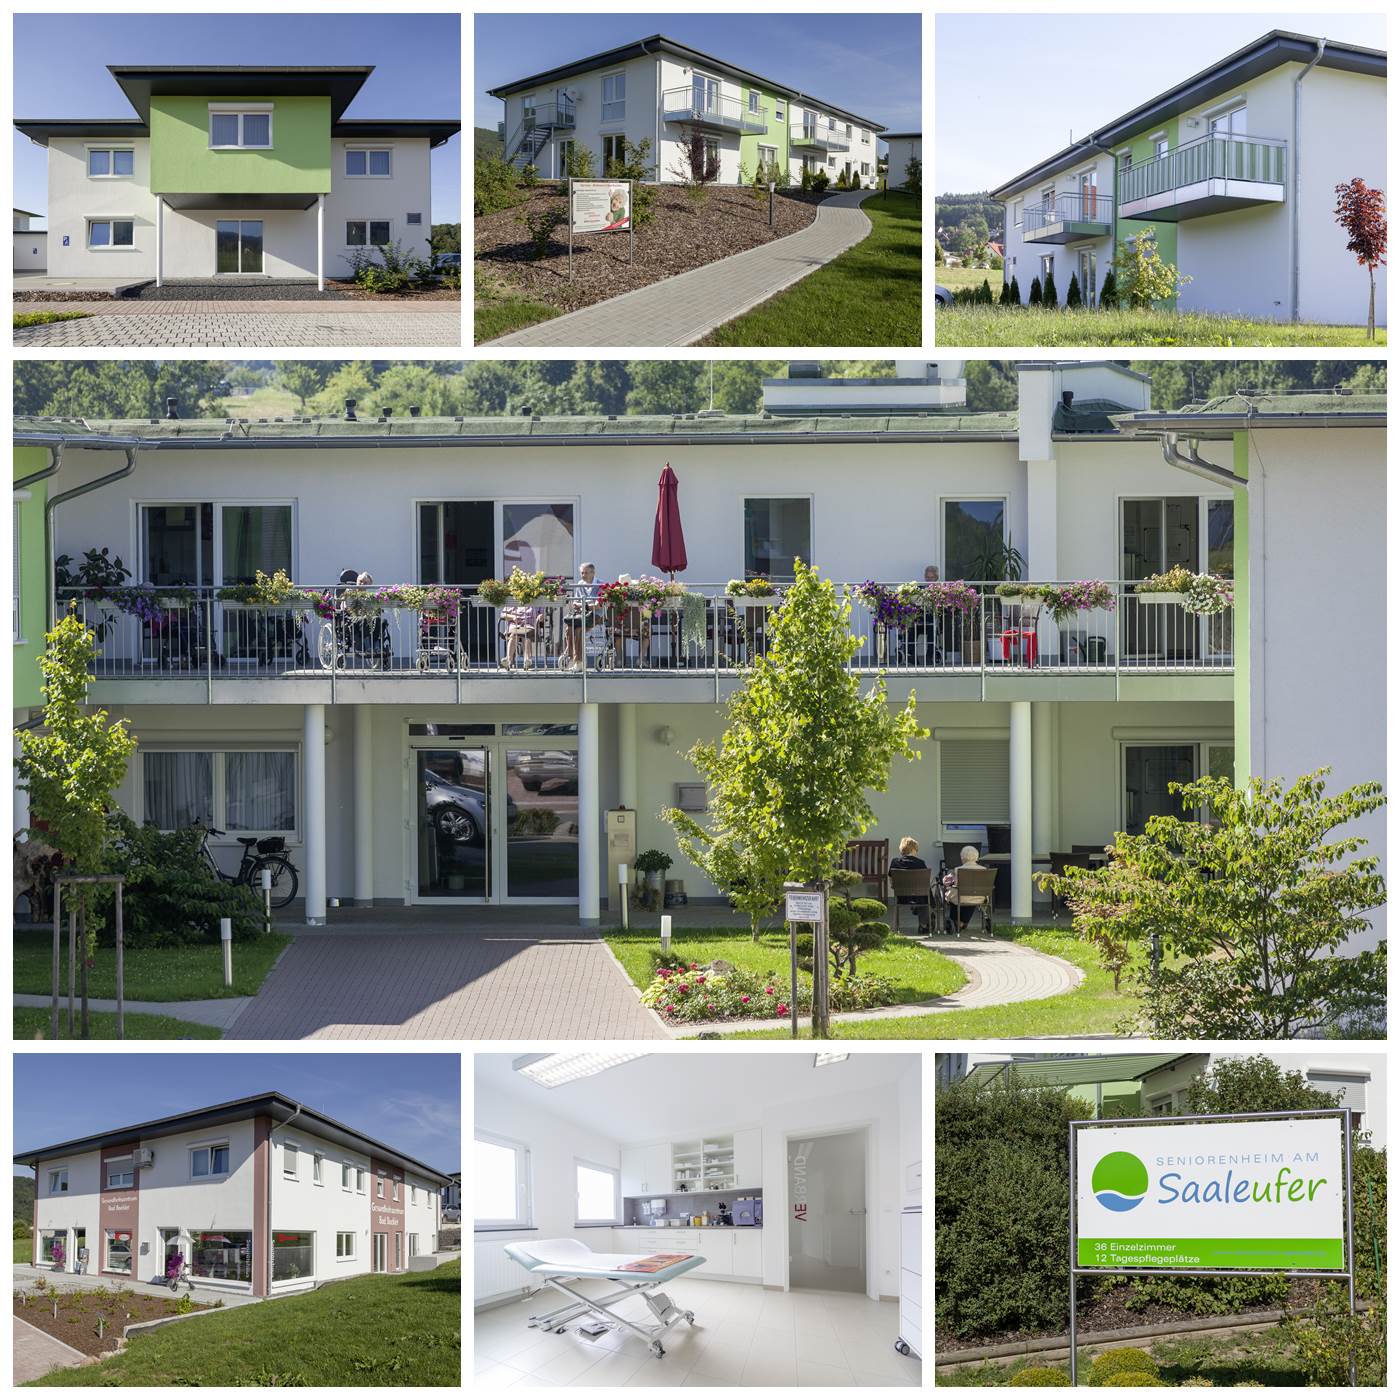 WOLF-Haus Seniorenheim am Saaleufer und Gesundheitszentrum Bad Bocklet